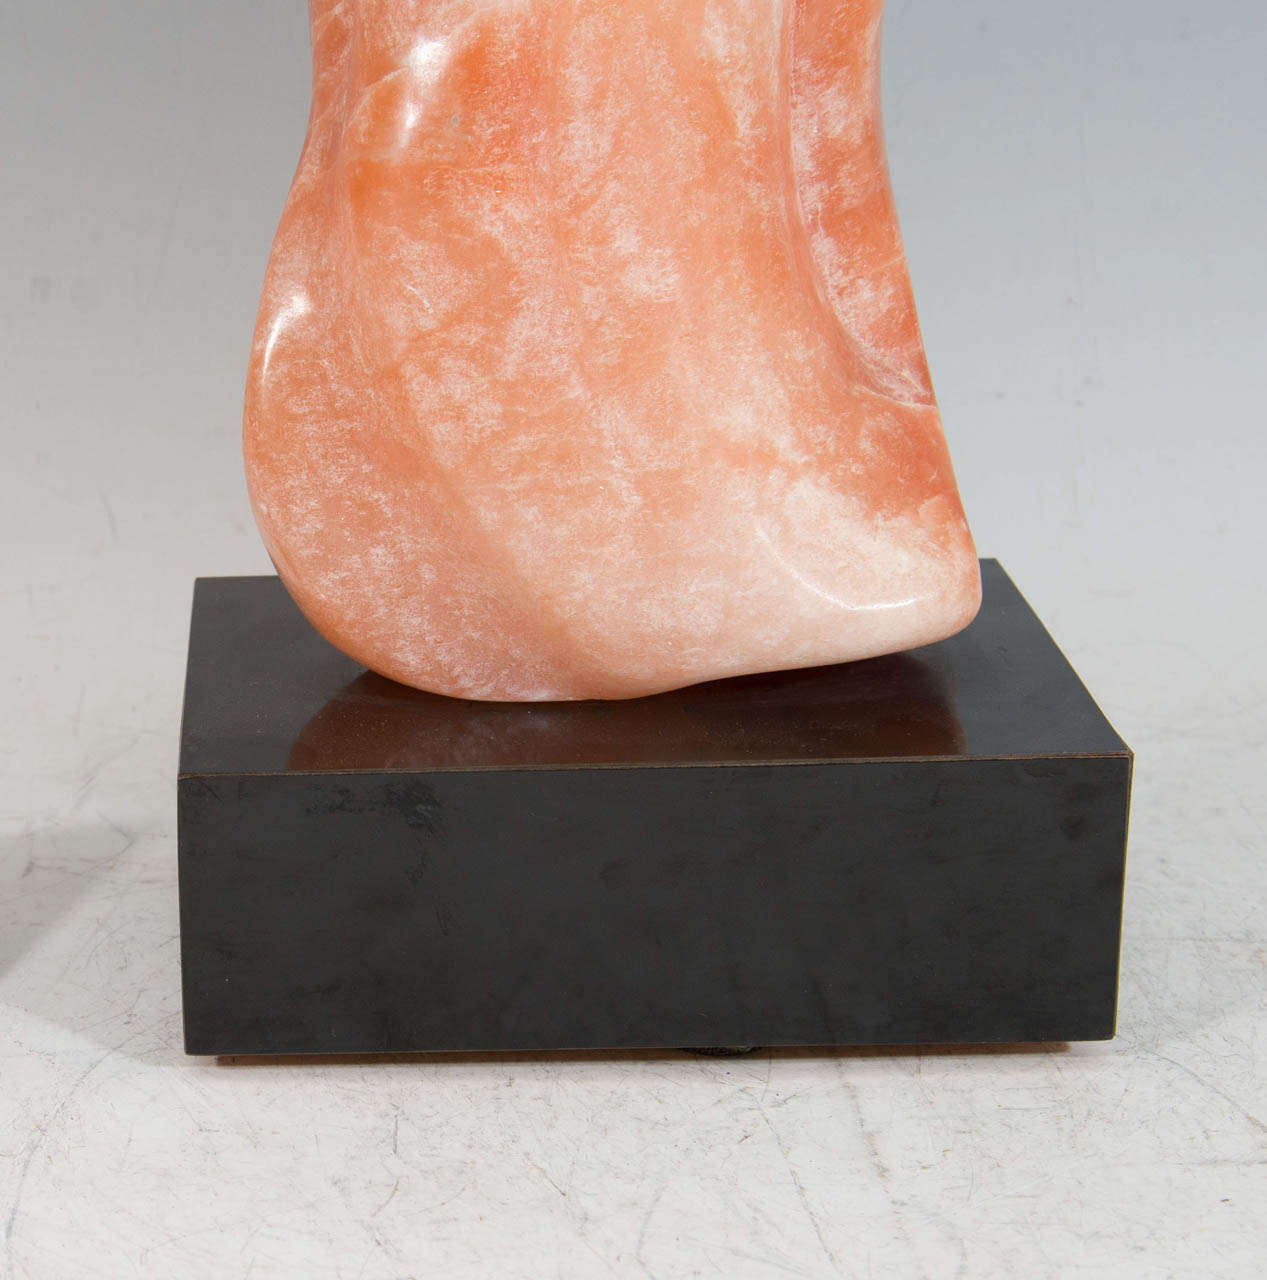 salmon colored stone